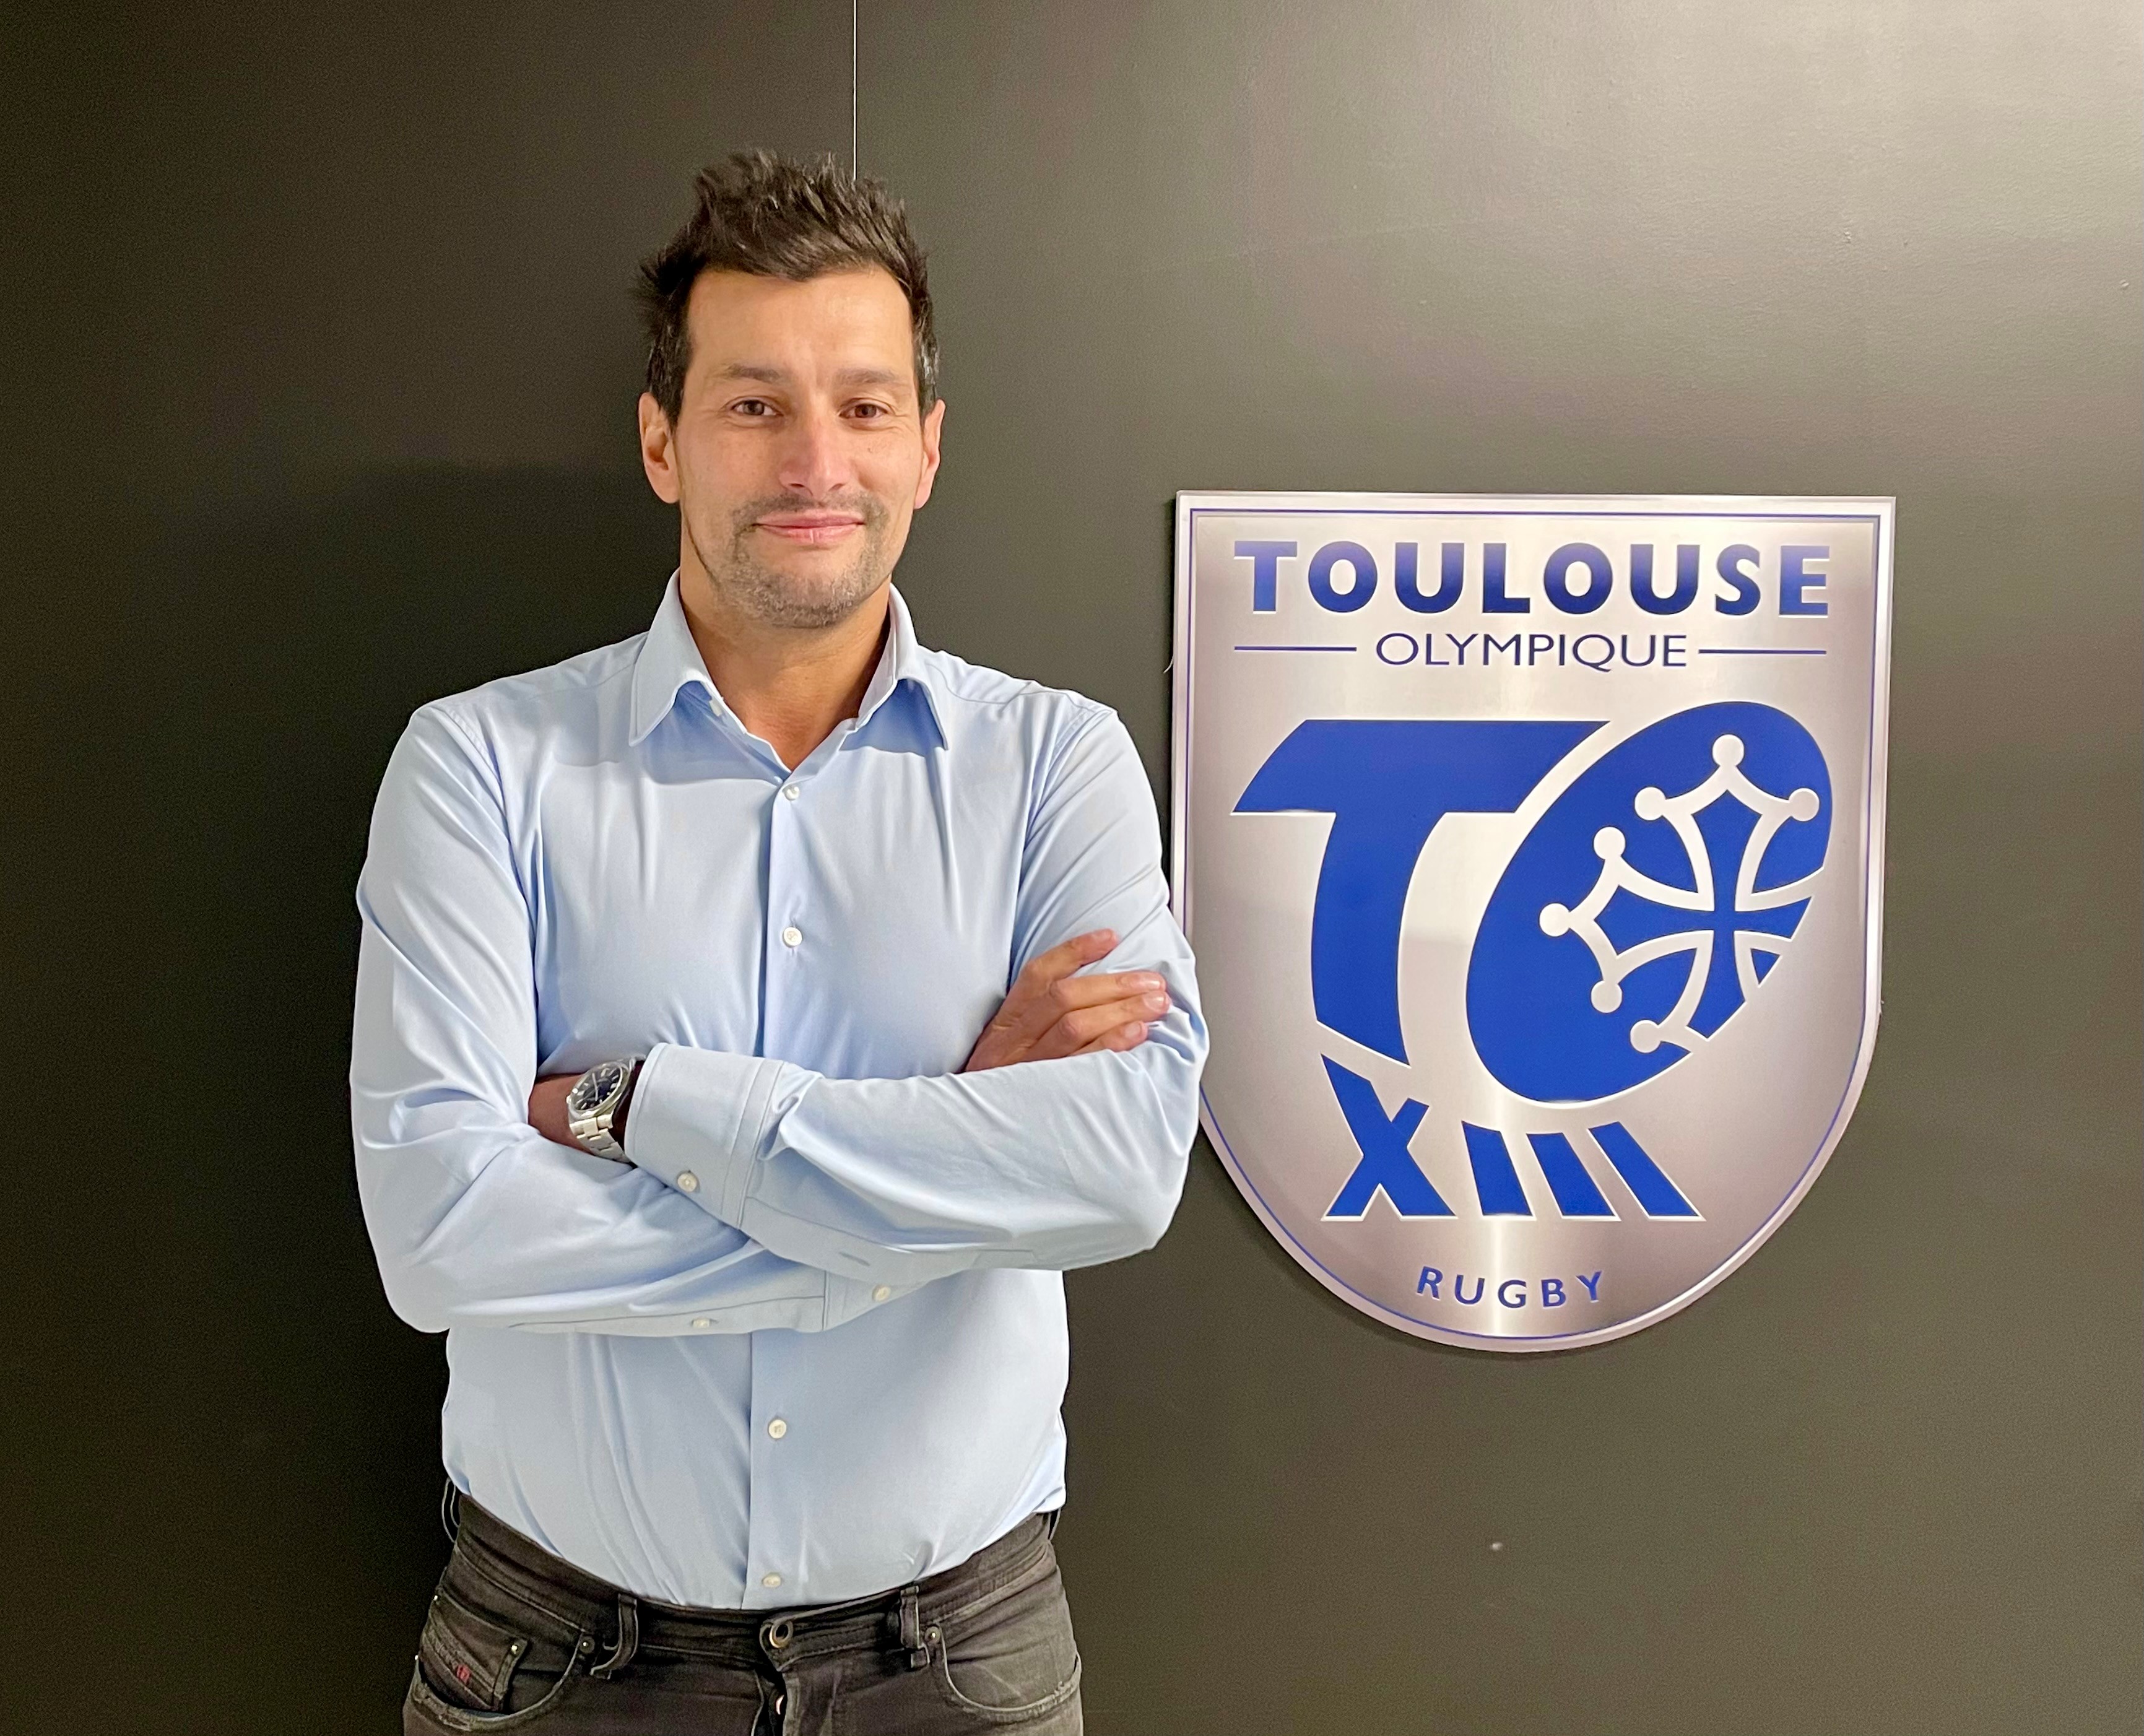 Au bord du dépôt de bilan il y a quelques mois, le Toulouse Olympique XIII veut reconstruire sur des bases saines. Dans le sillage de son nouveau président Olivier Dubois, le club espère un rebond favorable pour remonter en Super League, la première division anglaise. /DR